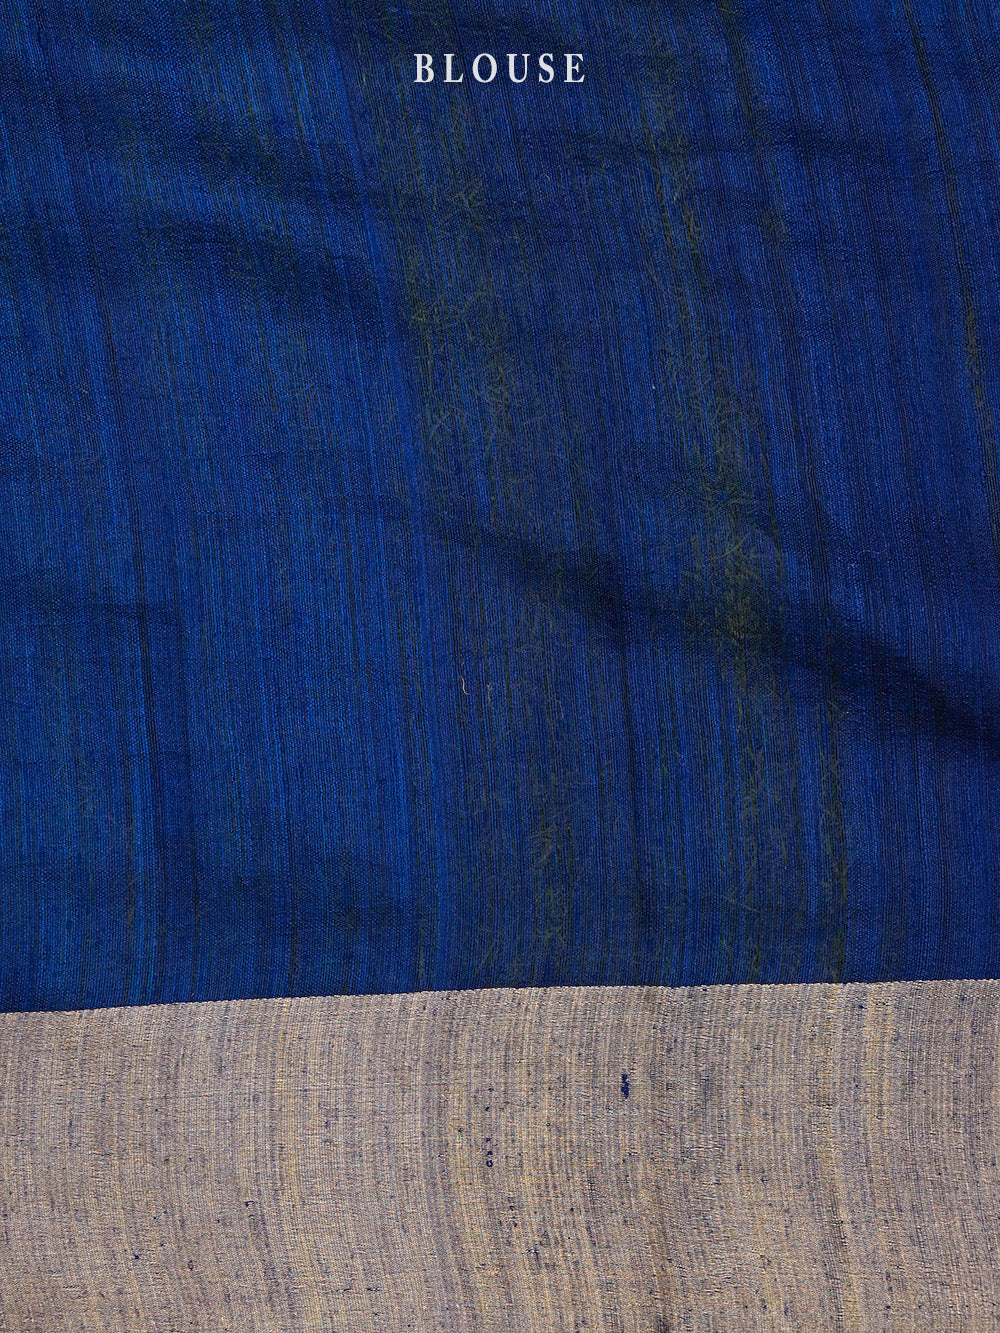 Royal Blue Shikargah Border Dupion Silk Handloom Banarasi Saree - Sacred Weaves